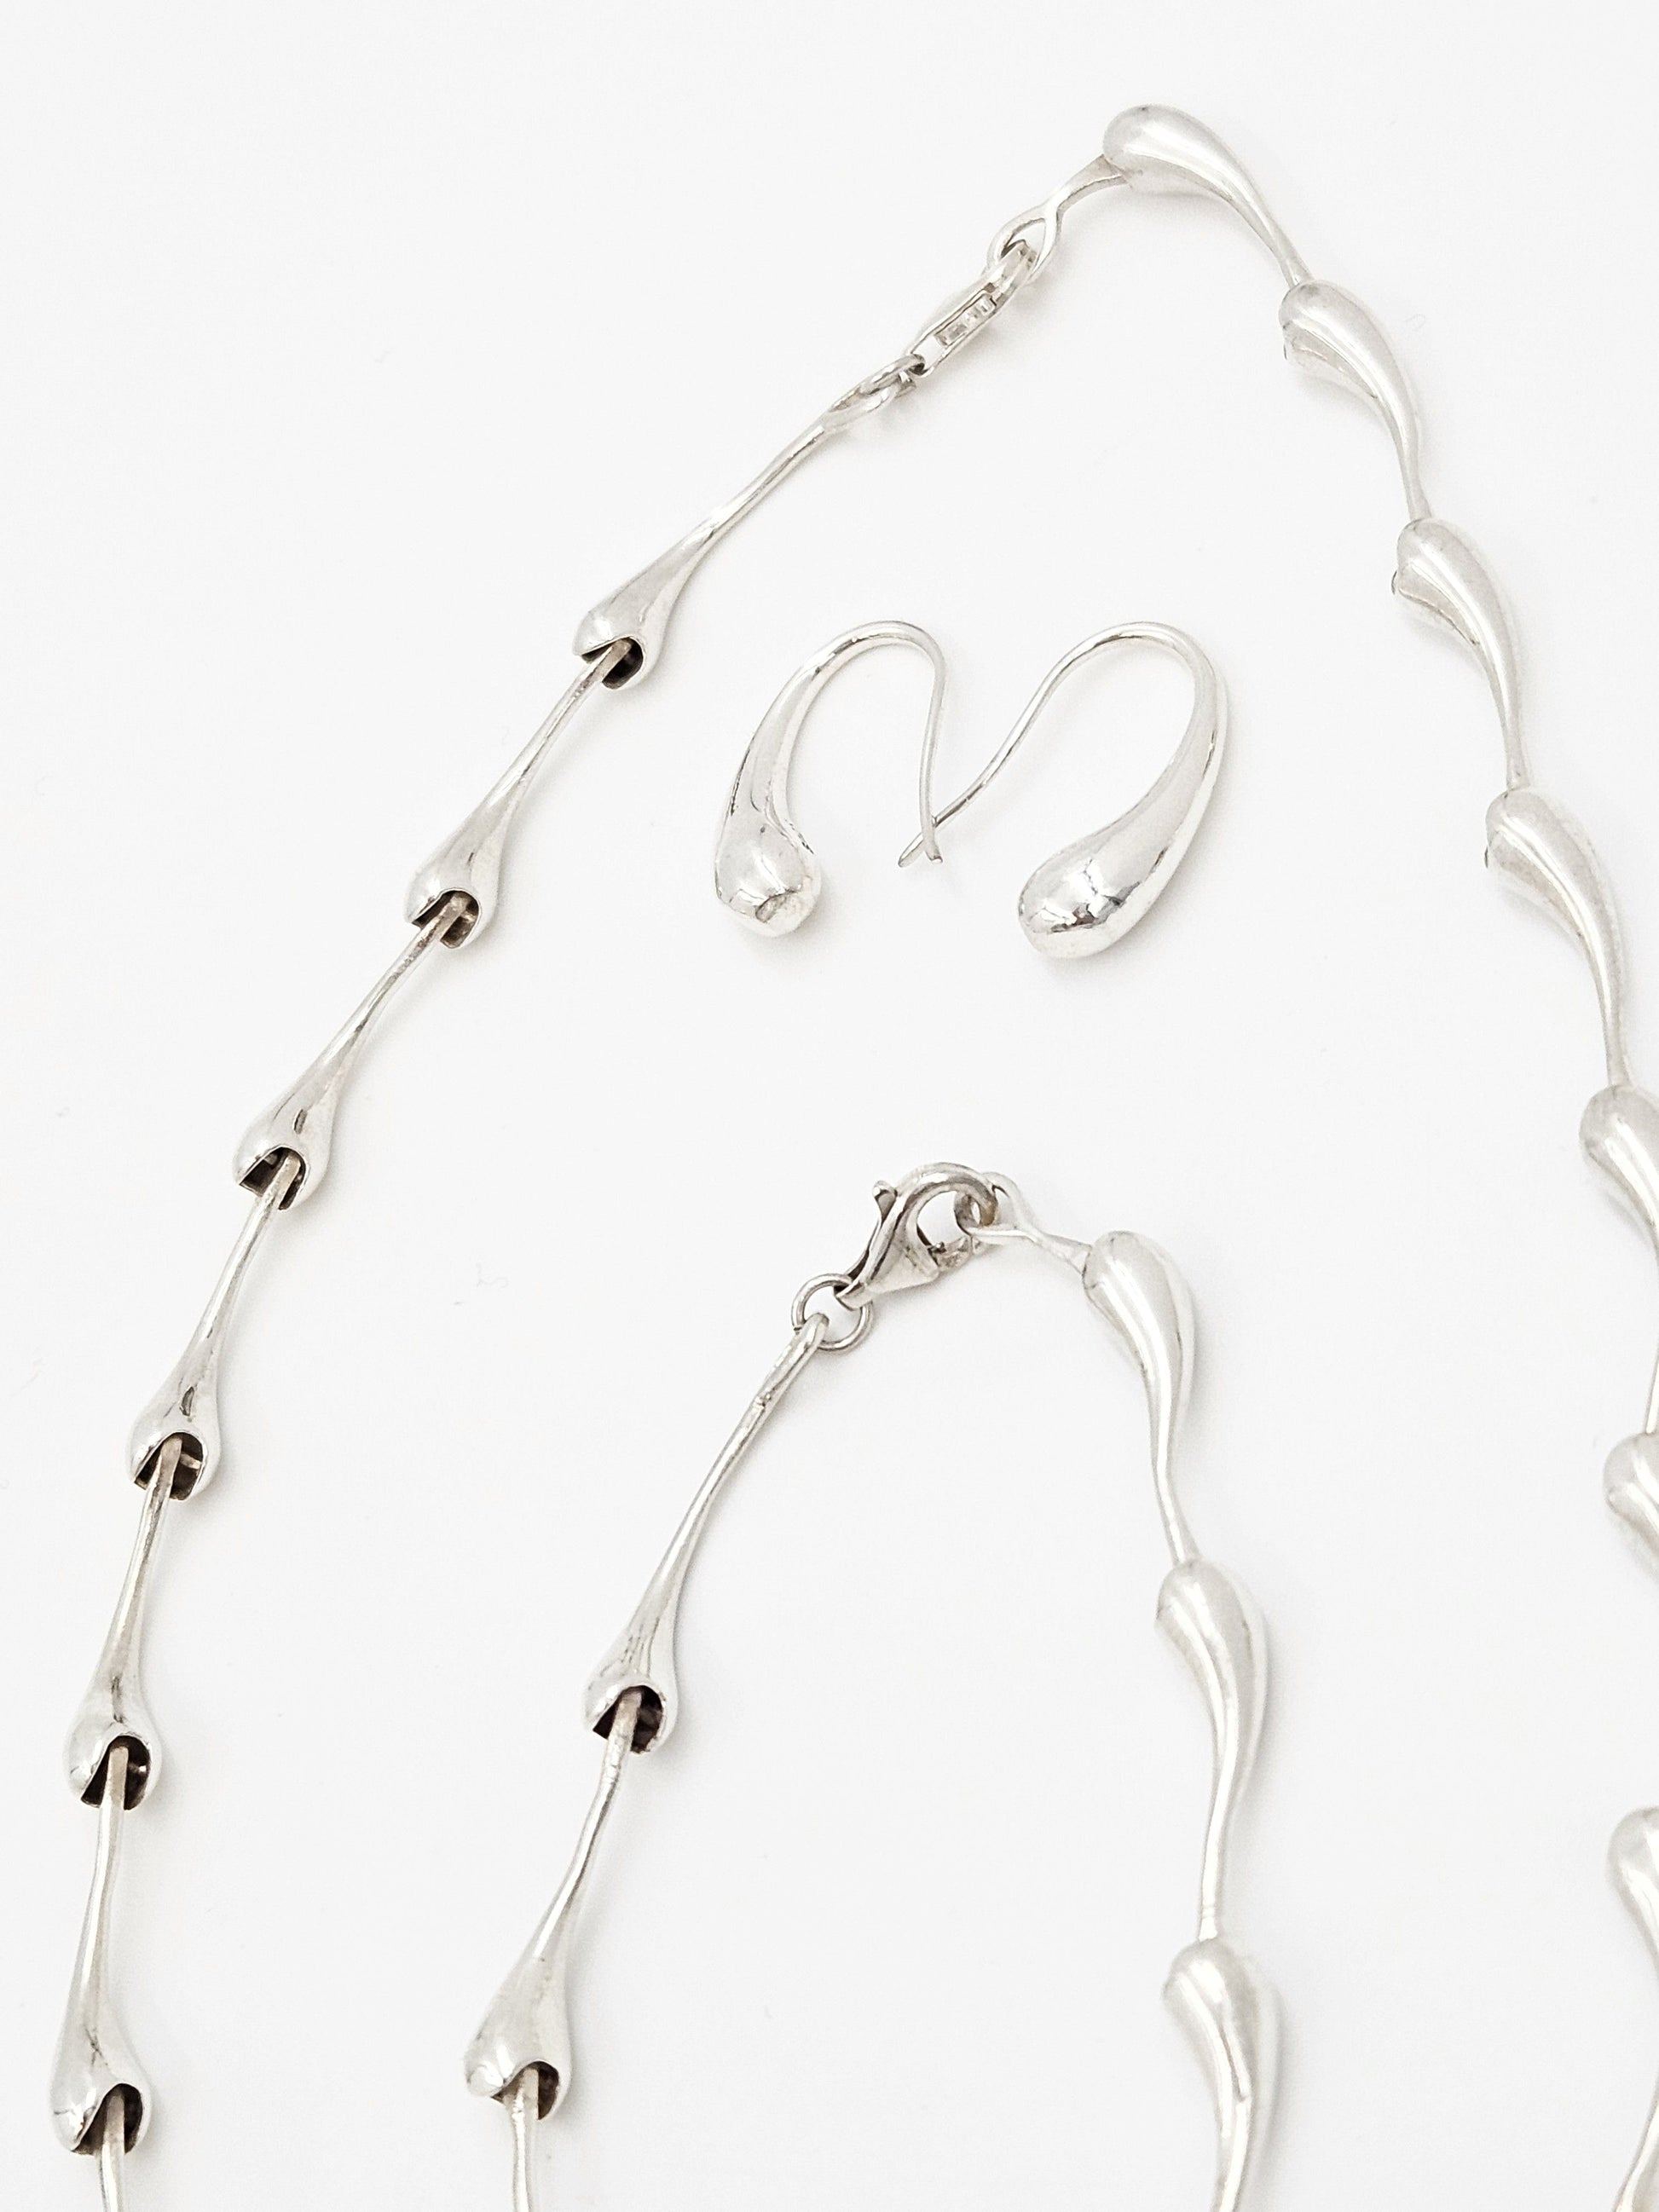 TMCMH Jewelry Sterling Necklace Bracelet Earrings SET